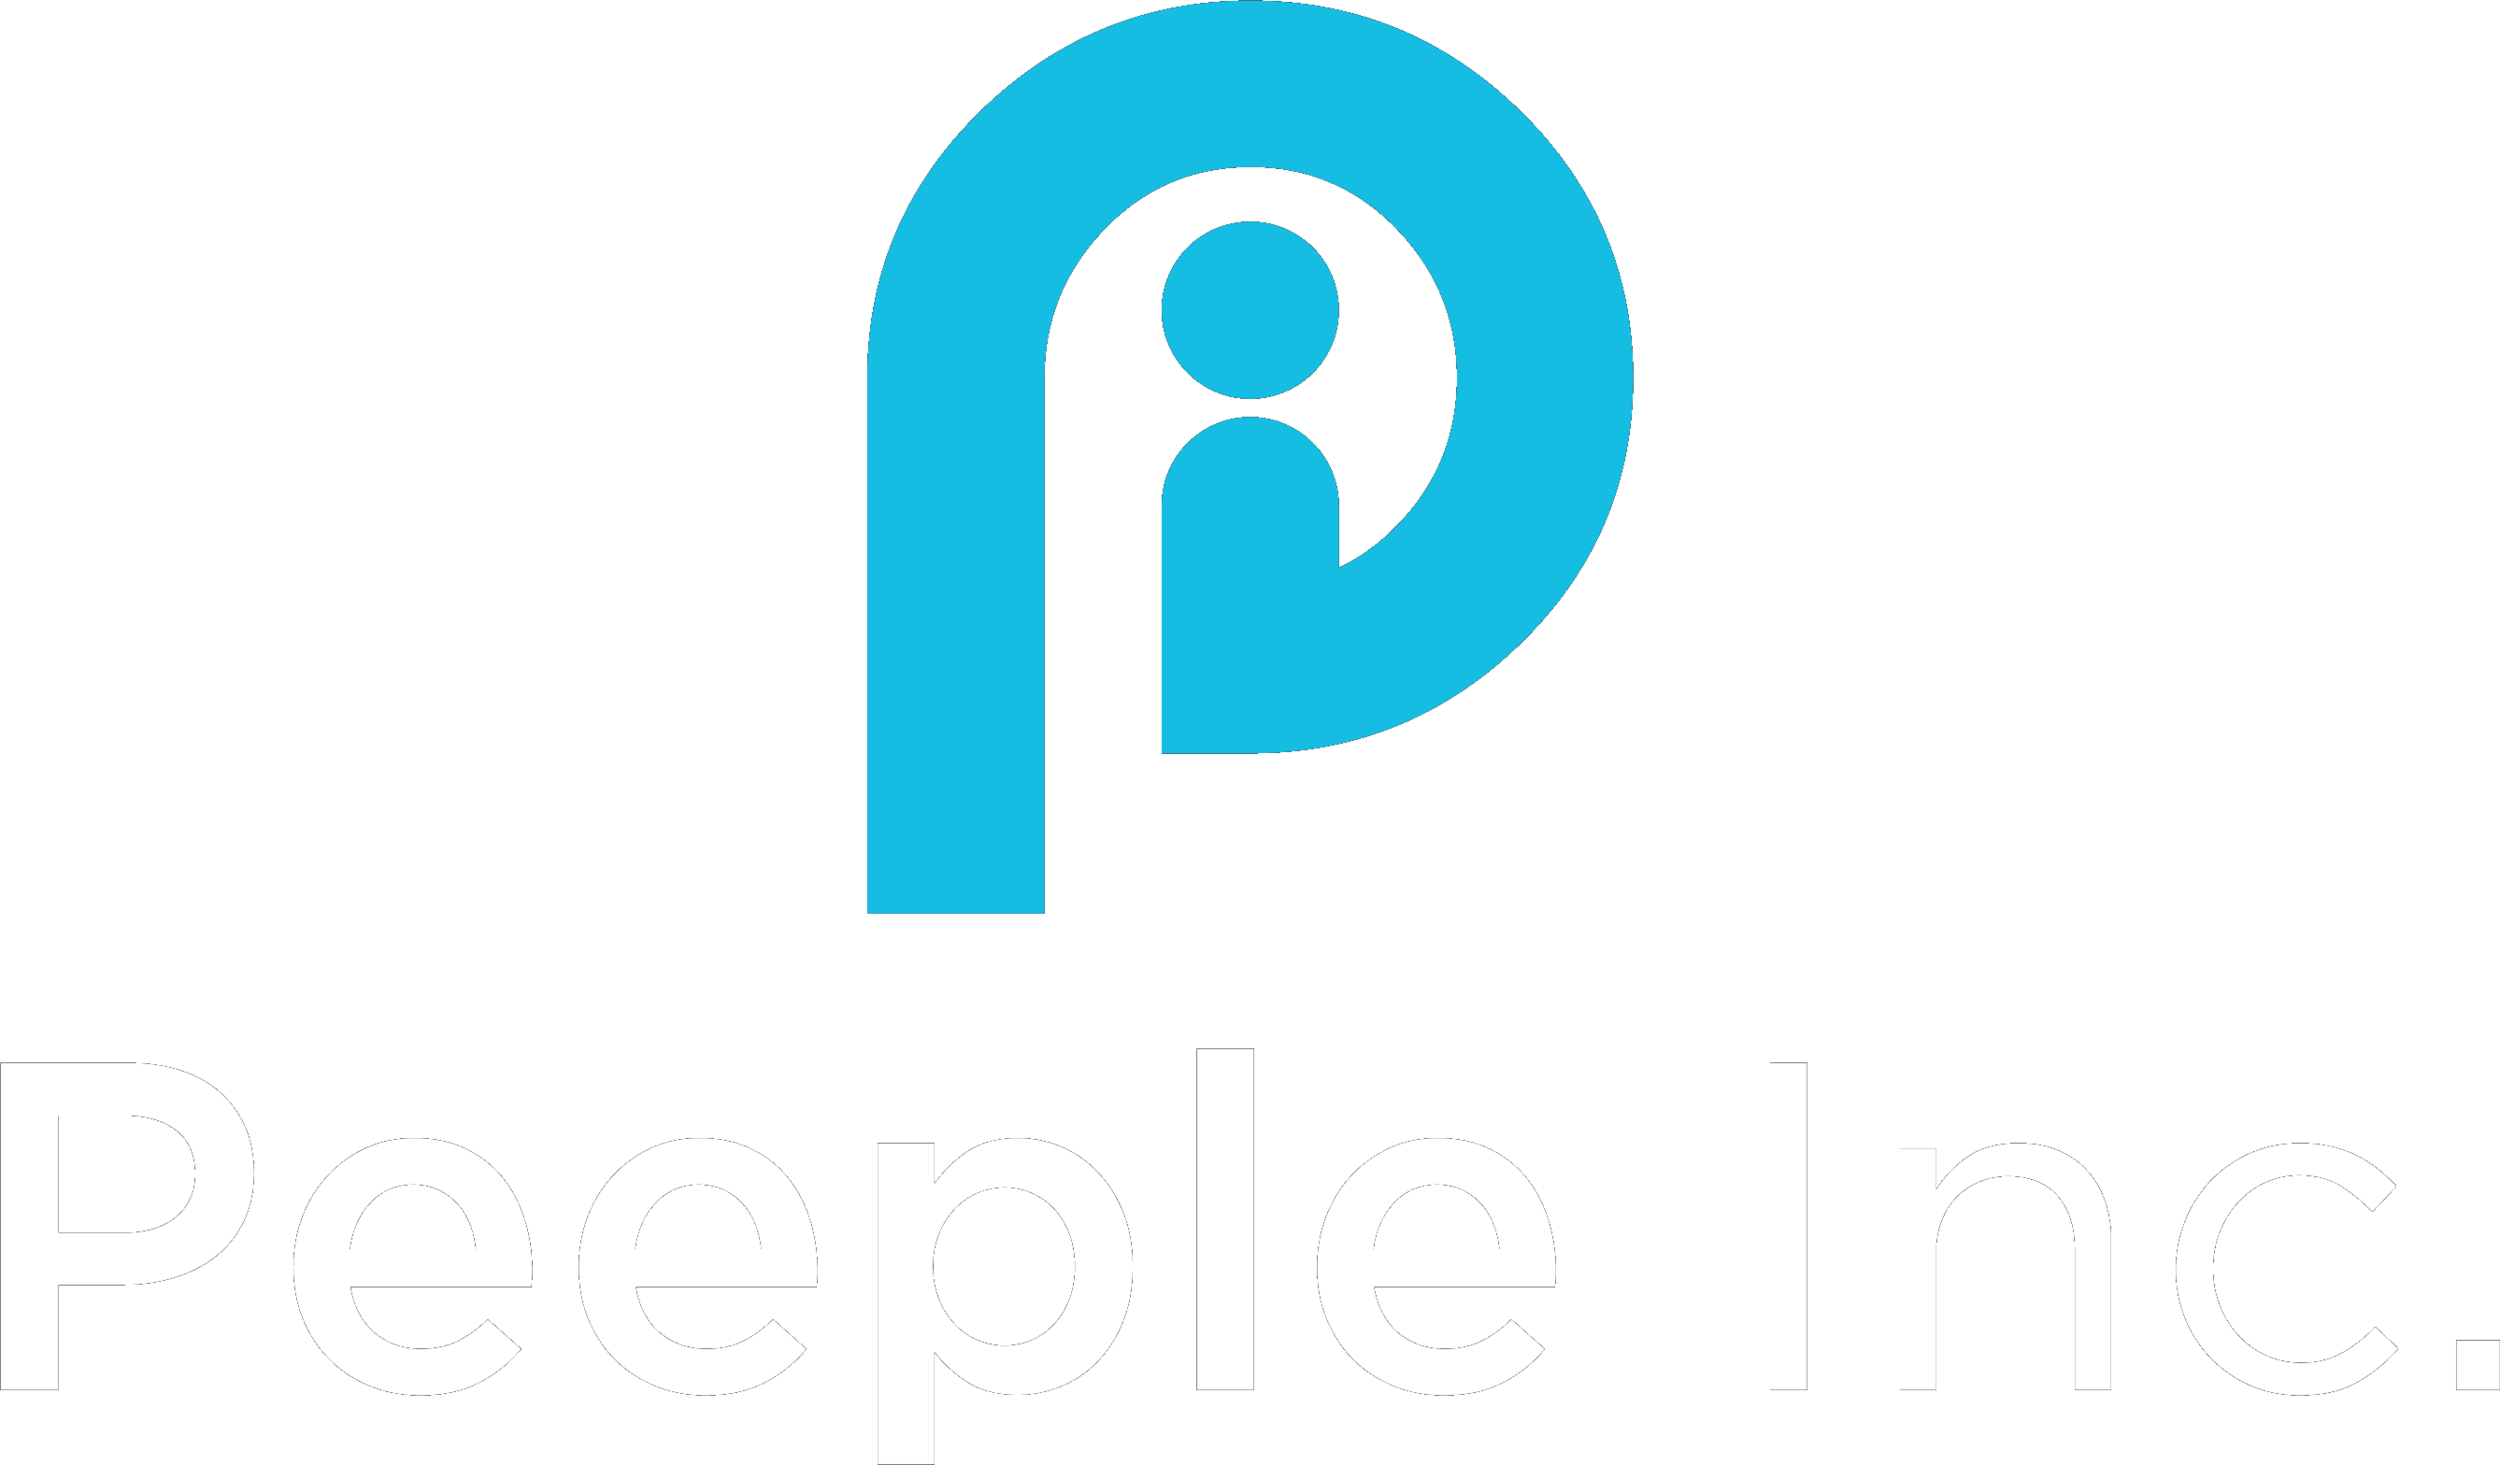 Peeple Inc. 